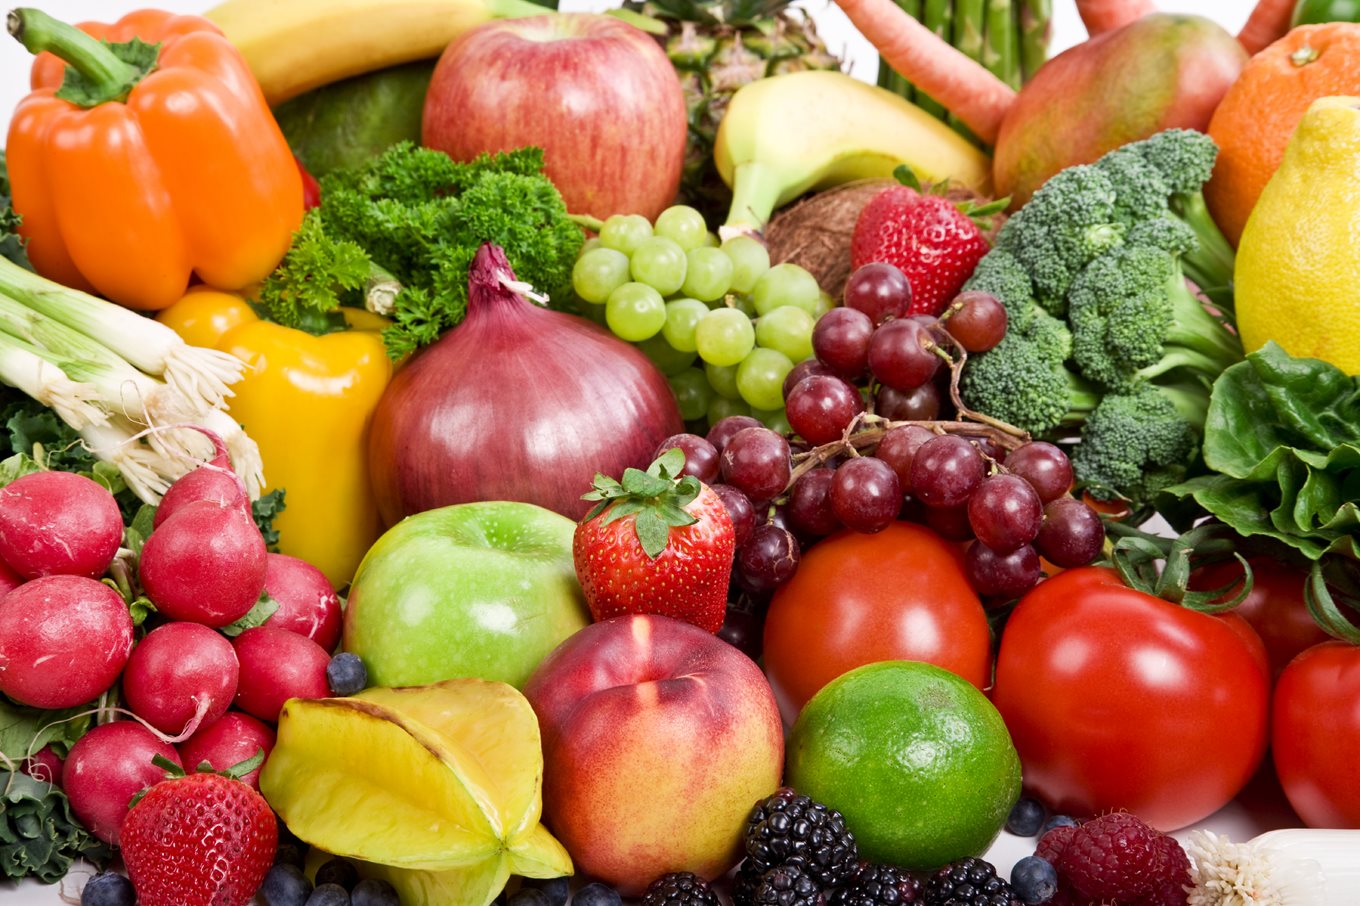 Fruit and vegetables | safefood